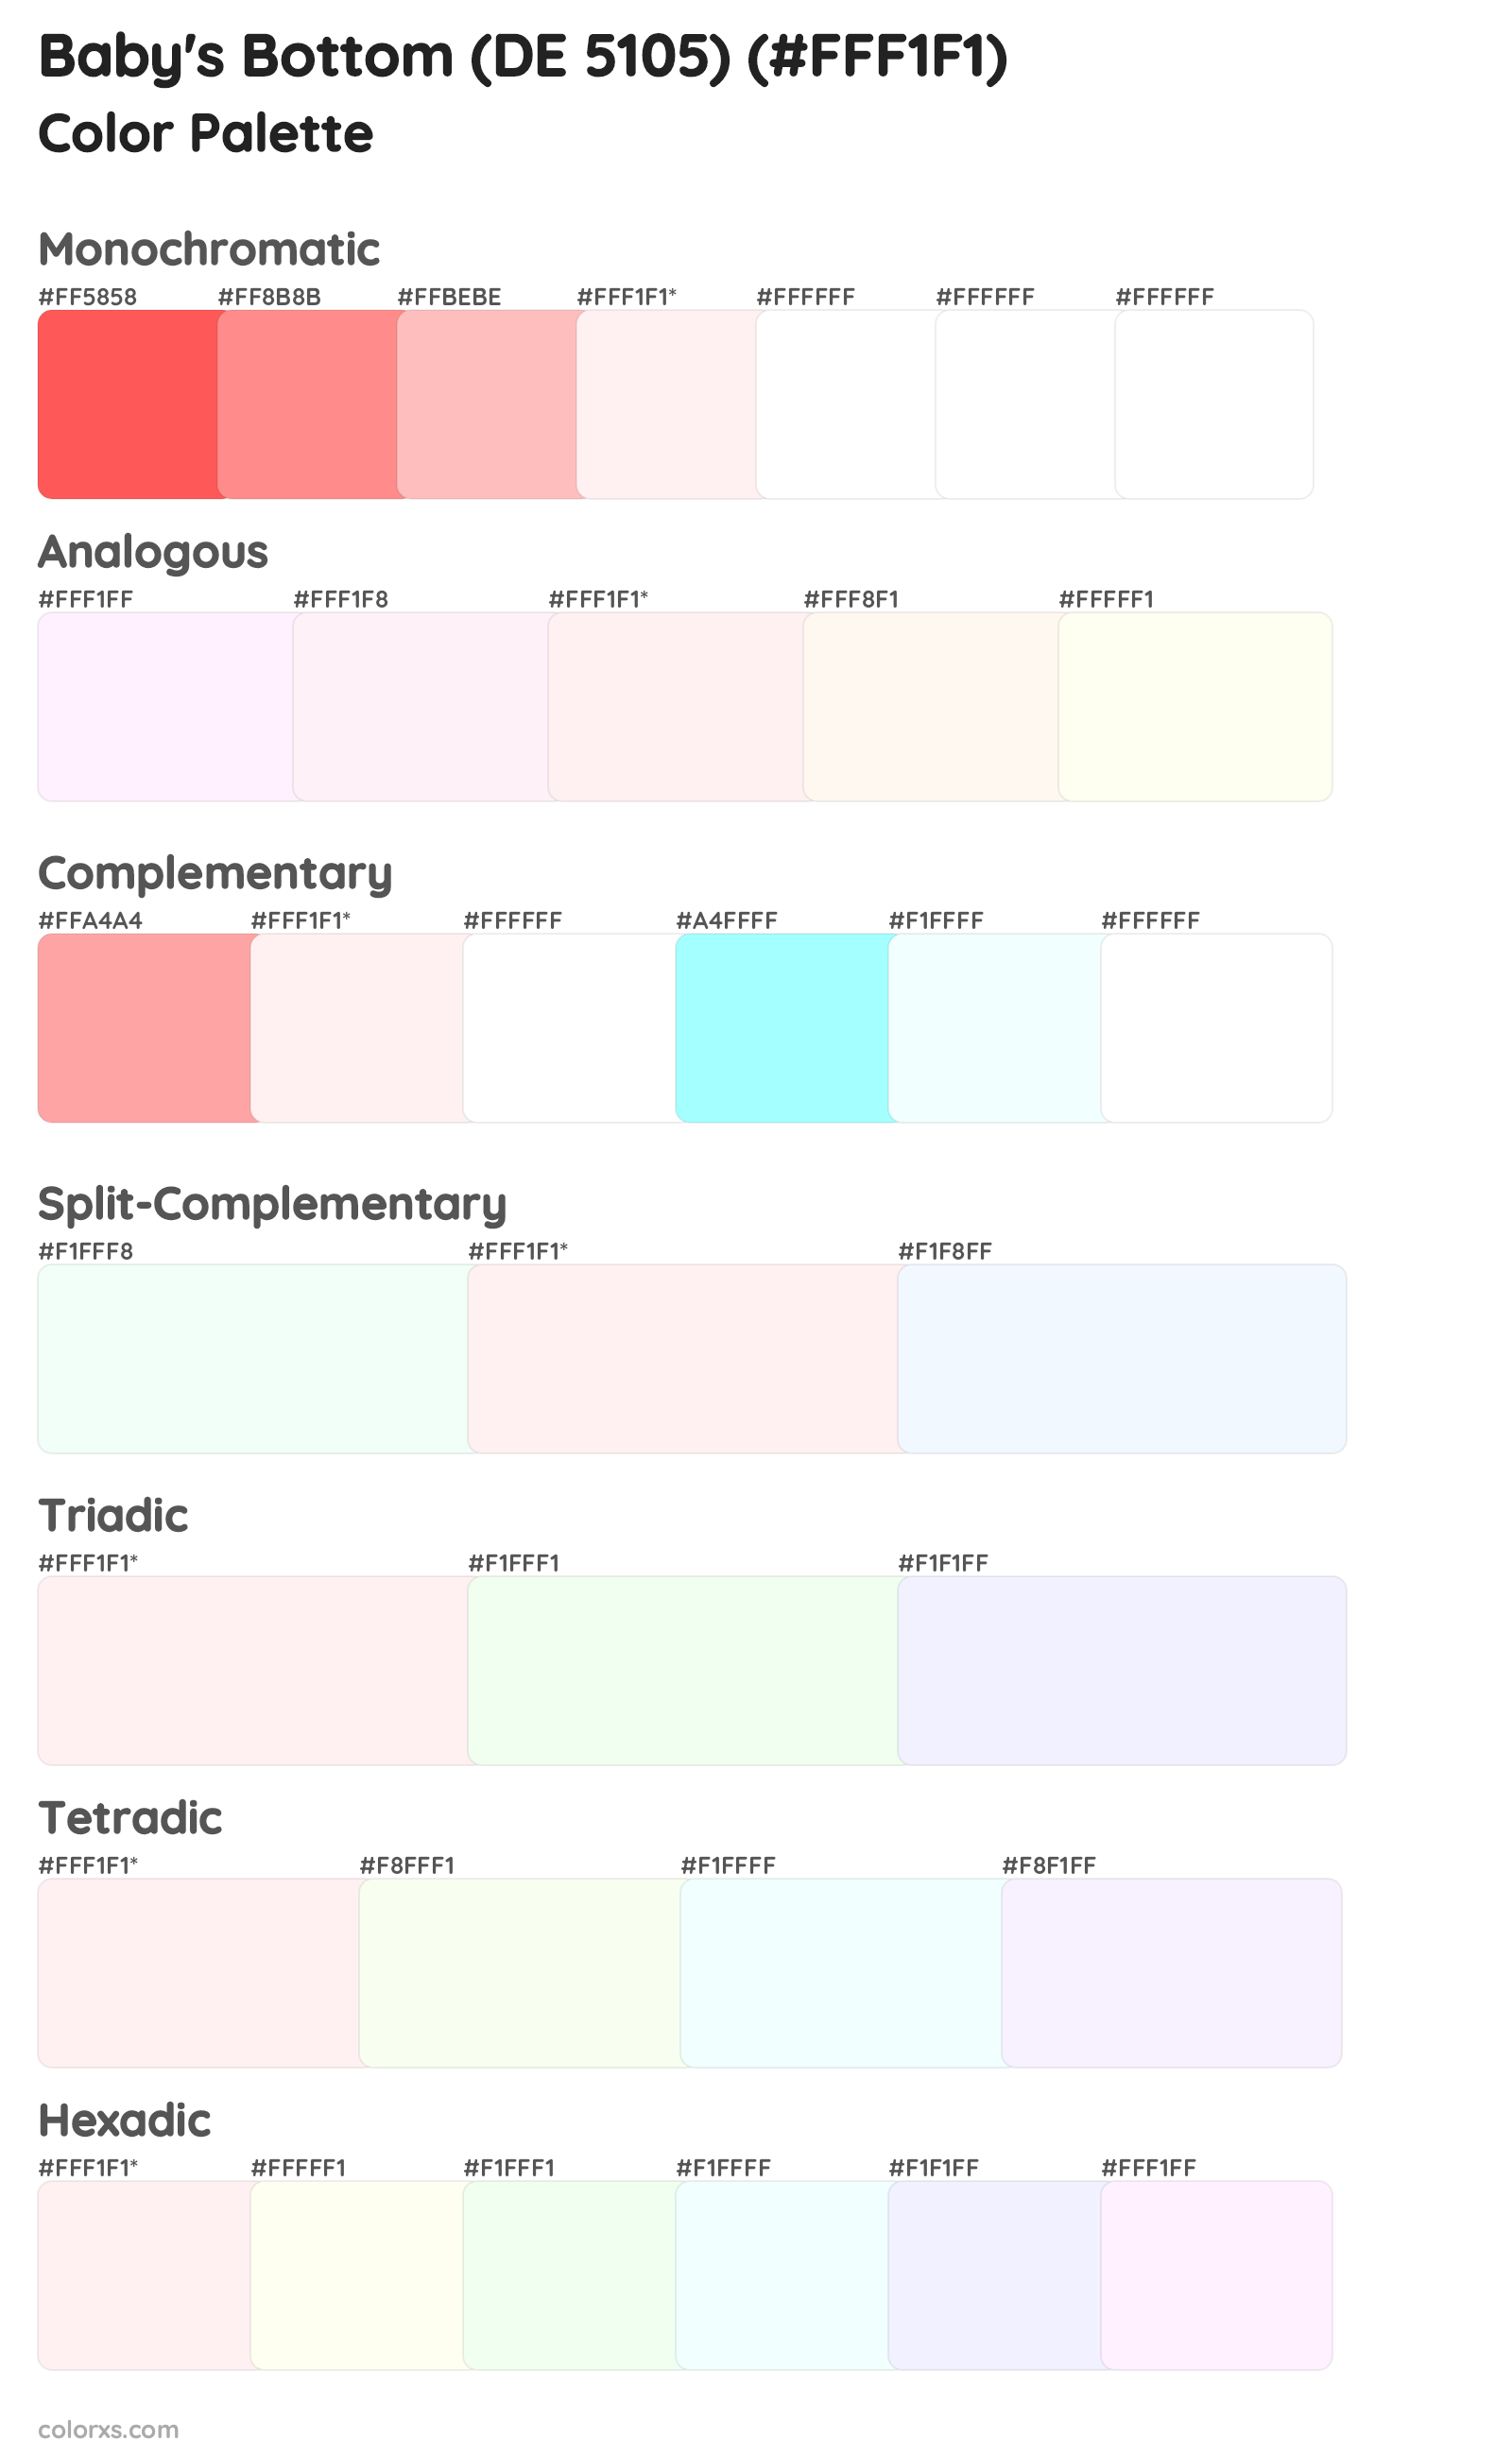 Baby's Bottom (DE 5105) Color Scheme Palettes